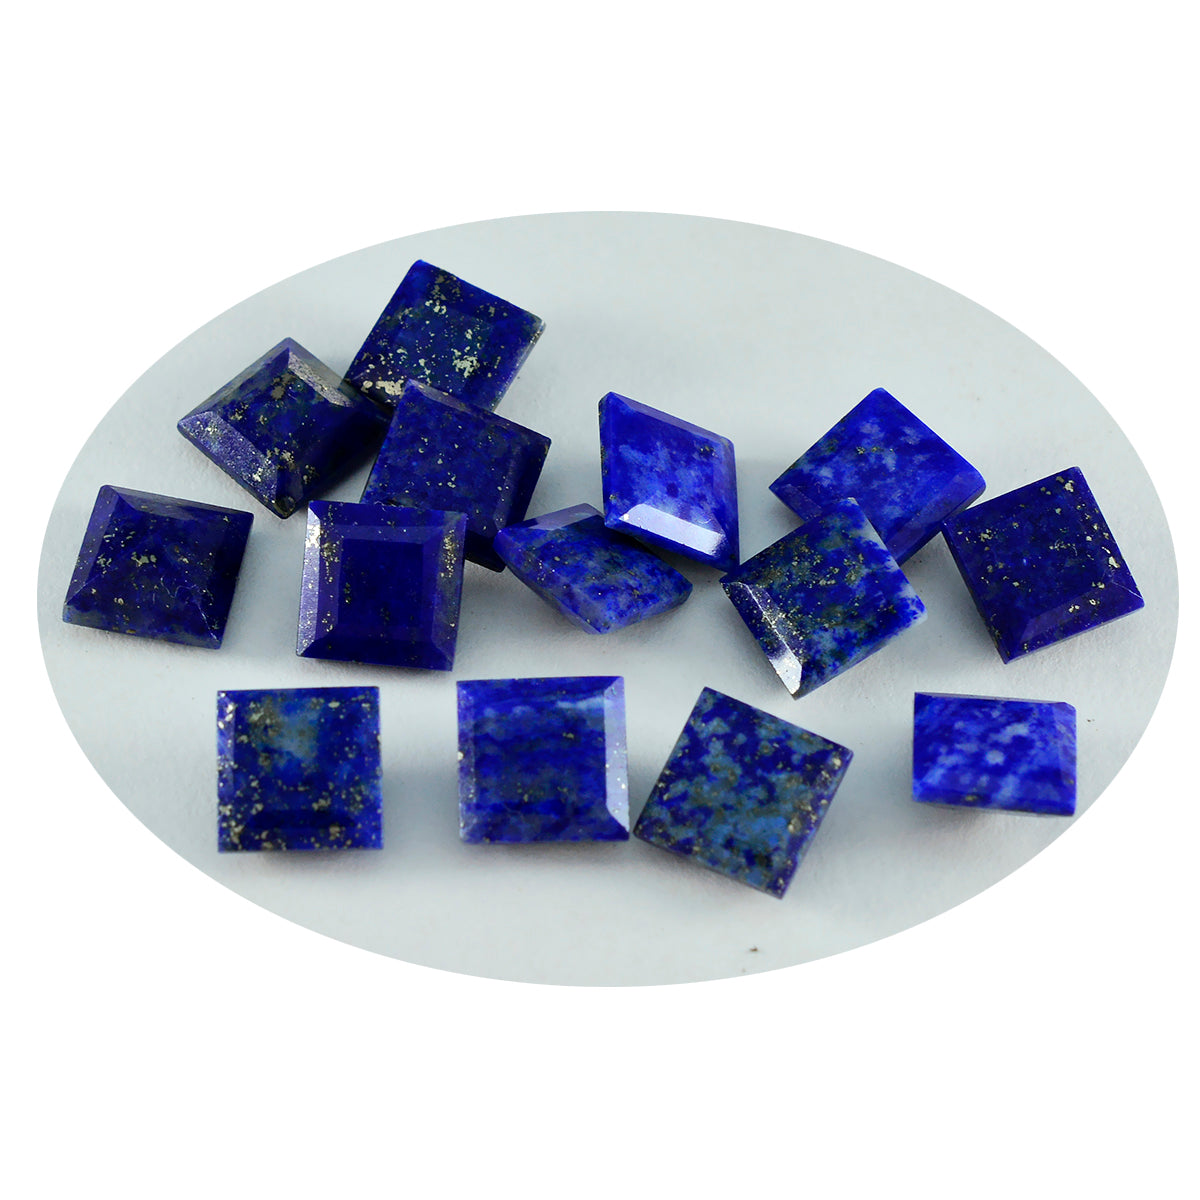 riyogems 1 шт. натуральный синий лазурит ограненный 7x7 мм квадратной формы драгоценные камни отличного качества